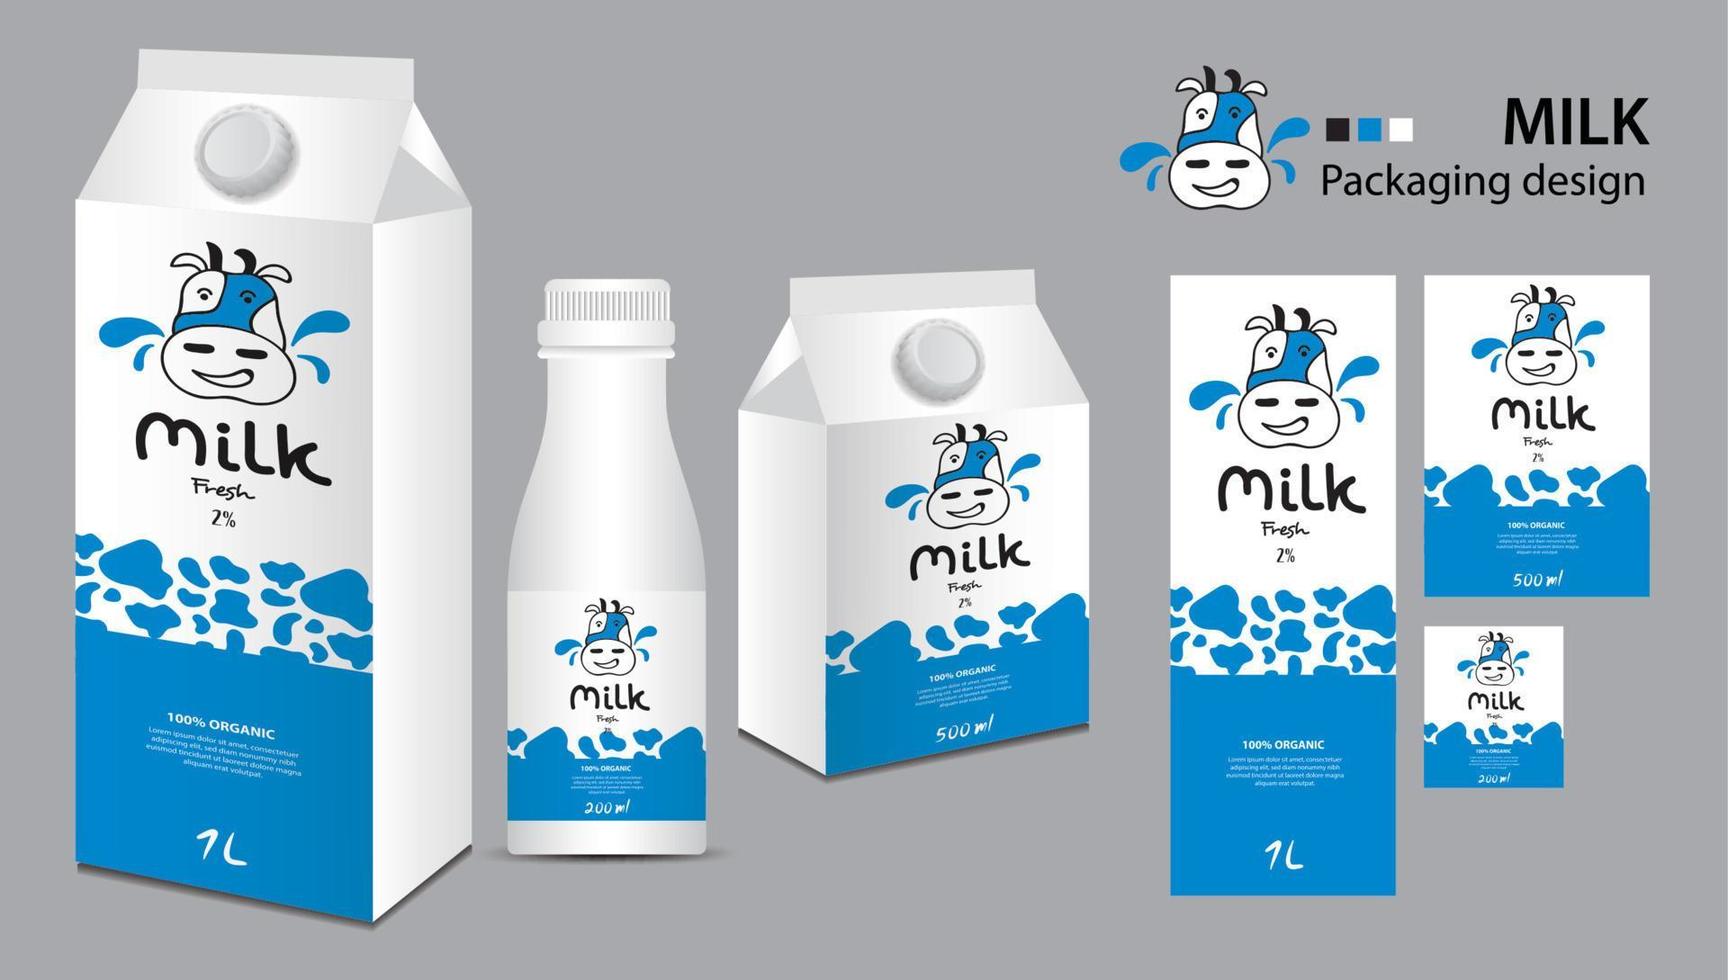 diseño de paquete de leche, diseño de etiquetas de leche, cajas de leche y vector de botella, ilustración 3d realista de caja, plantilla de embalaje creativa, diseño de producto, pancarta de comida, ilustración de dibujos animados con el logotipo de vaca adorable